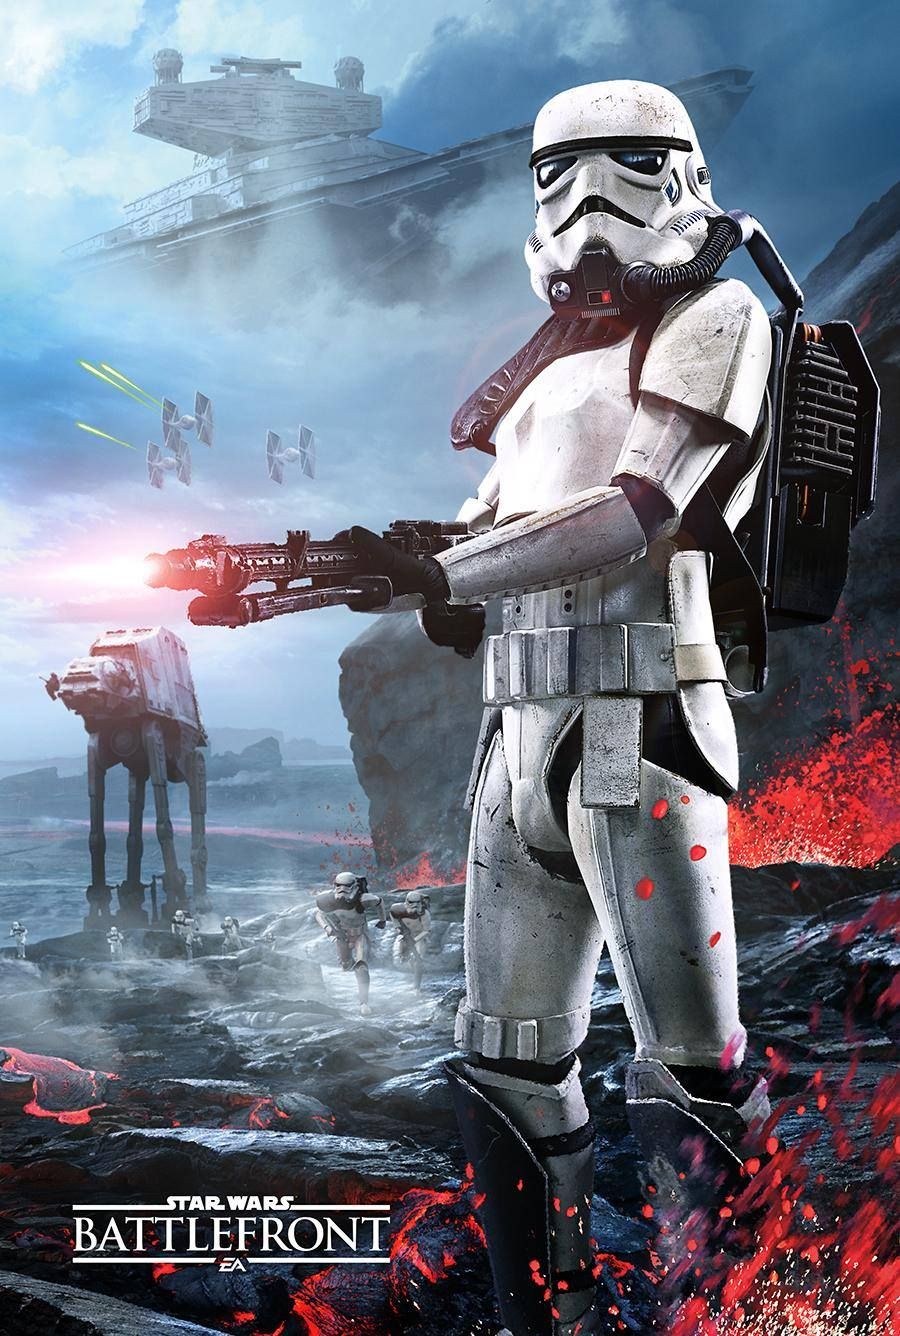 Star Wars Battlefront Poster